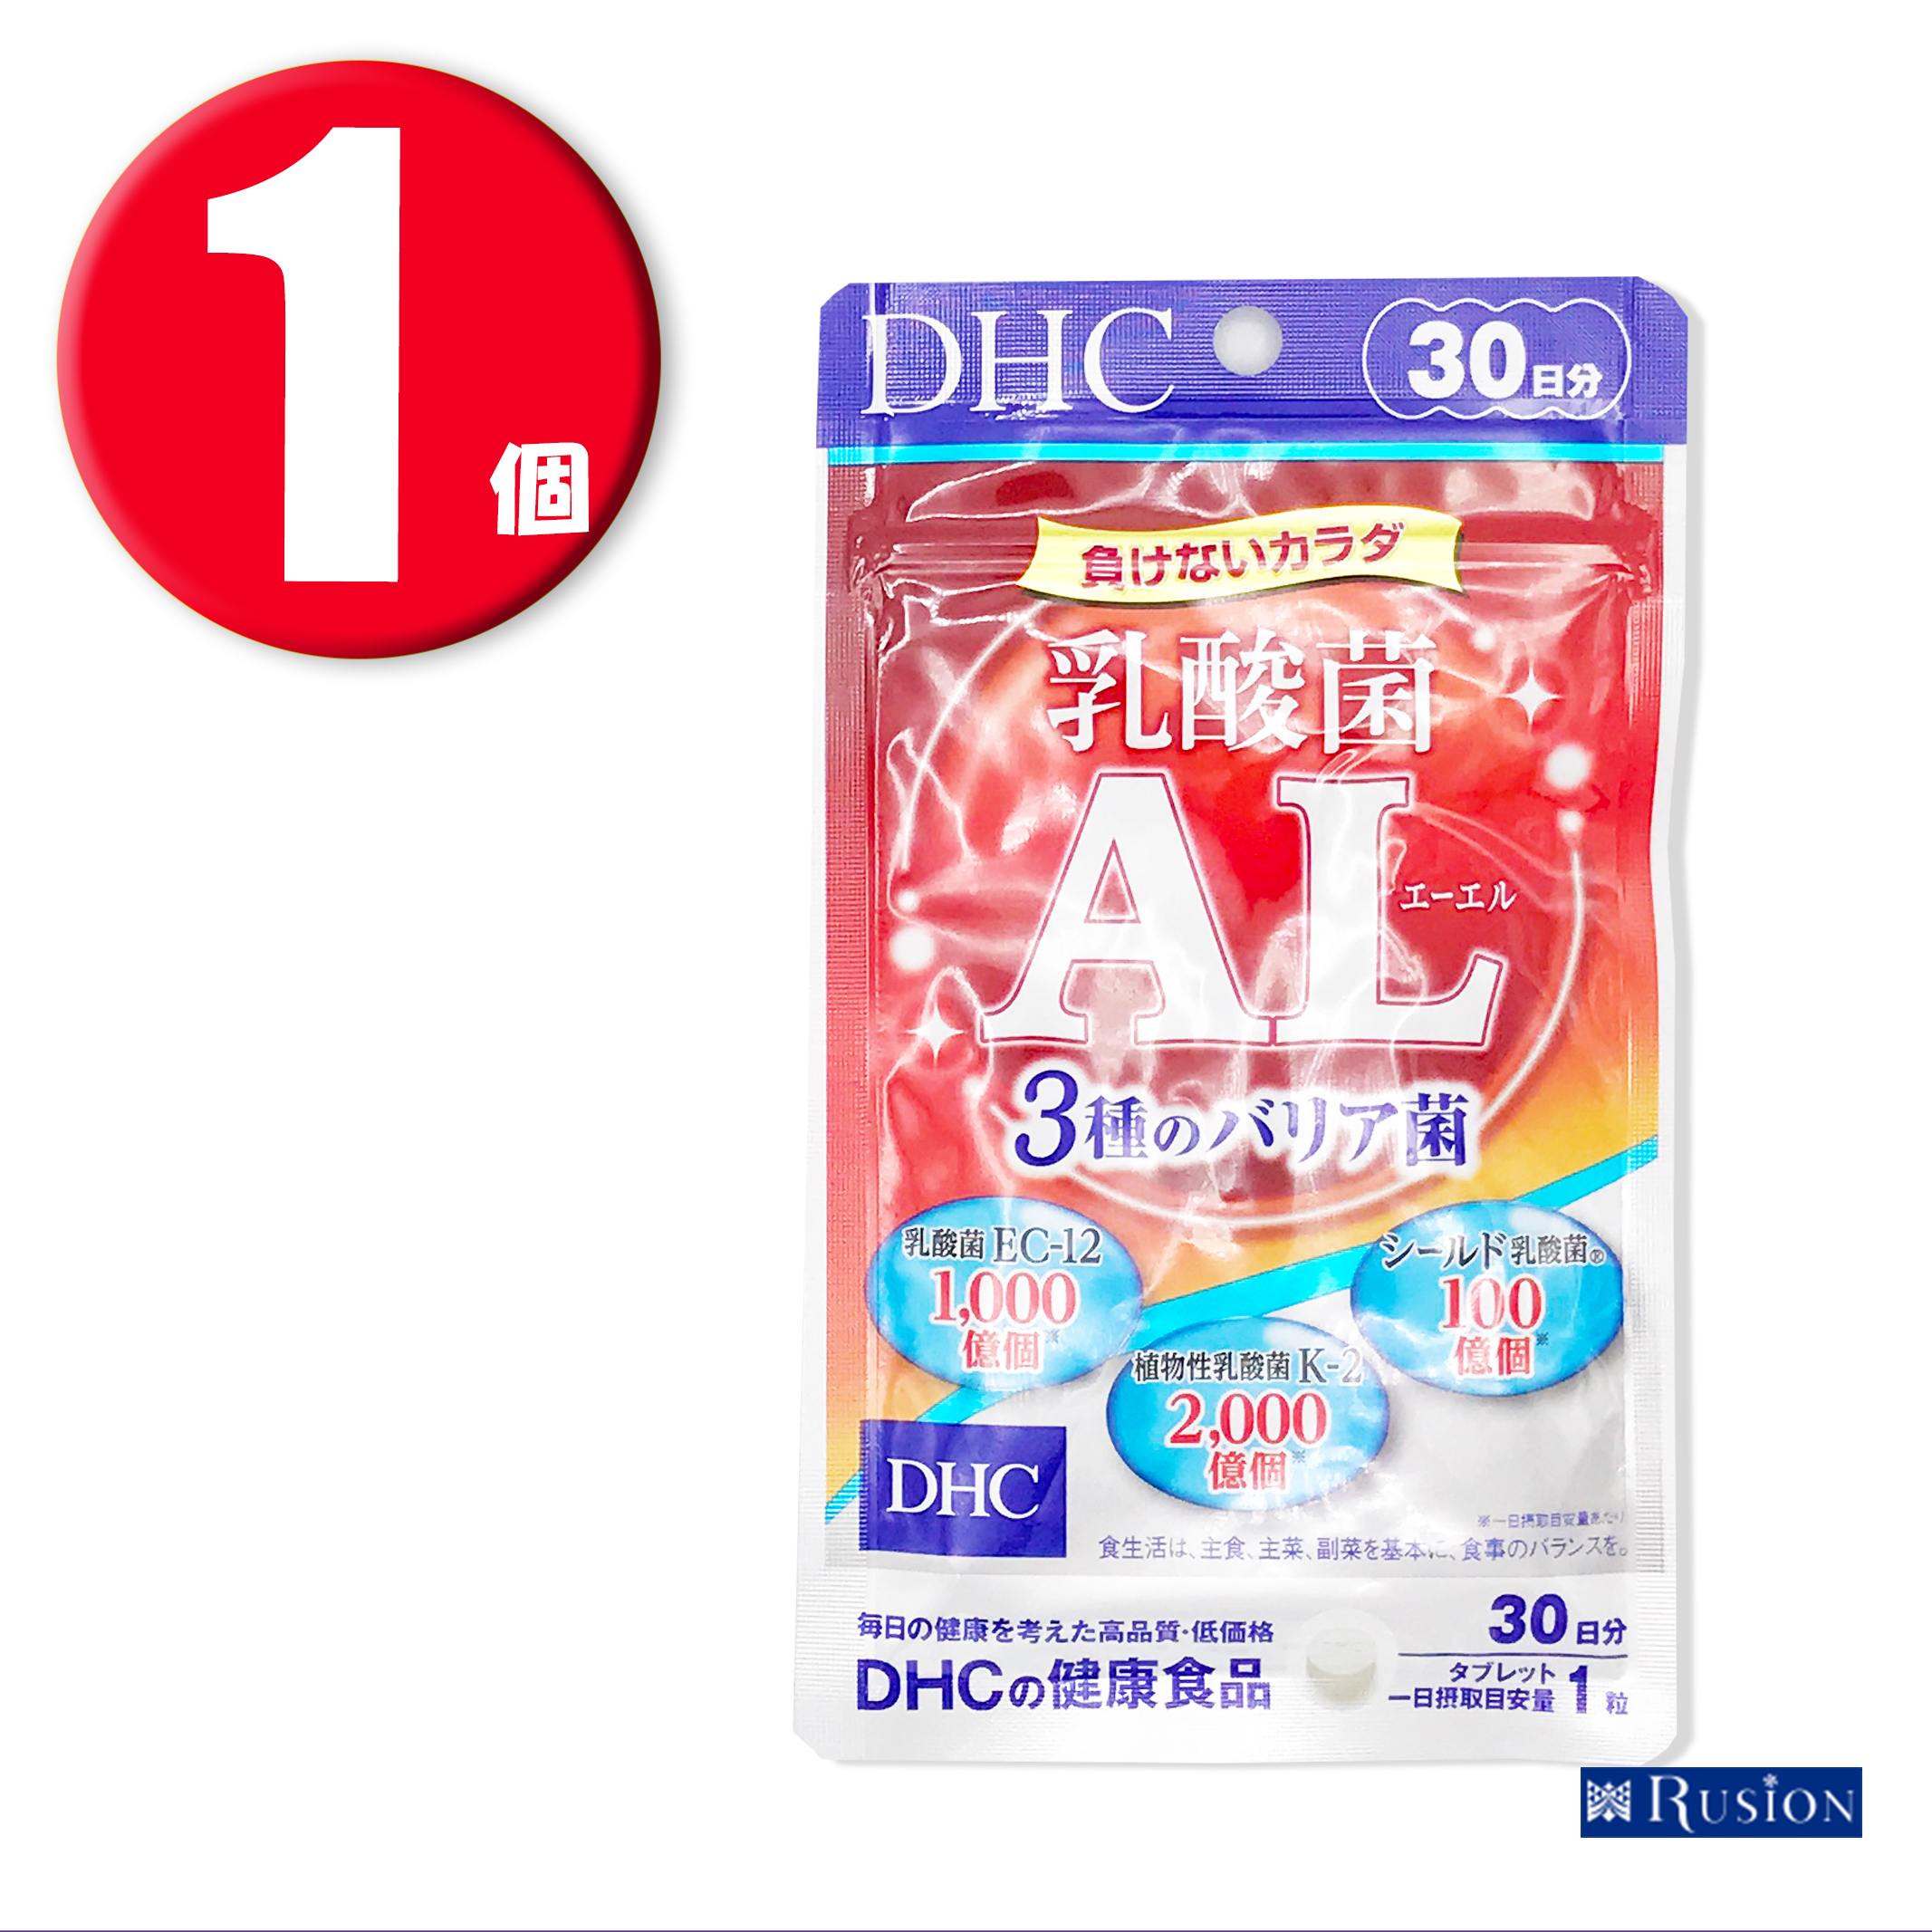 (1個) DHC サプリメント 乳酸菌AL 3種のバリア菌 30日分 ディーエイチシー 健康食品